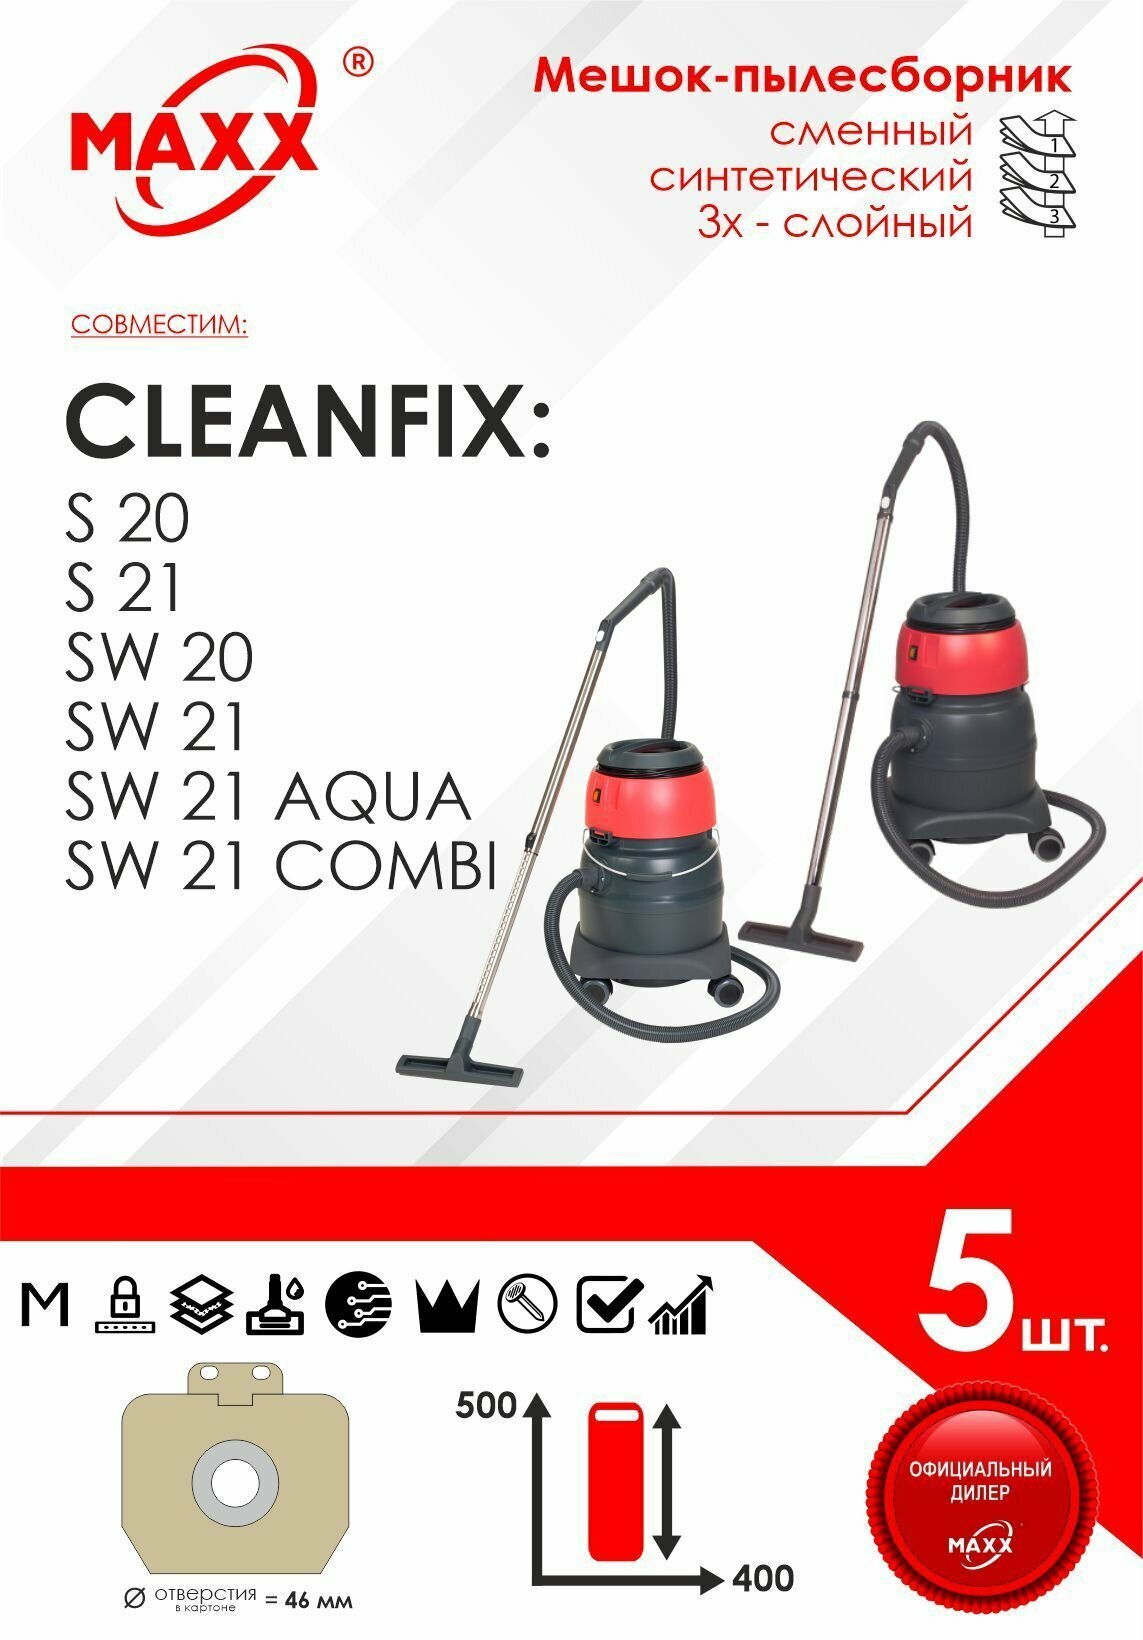 Мешок - пылесборник 5 шт. для пылесоса Cleanfix S 20, Cleanfix SW 20, SW 21